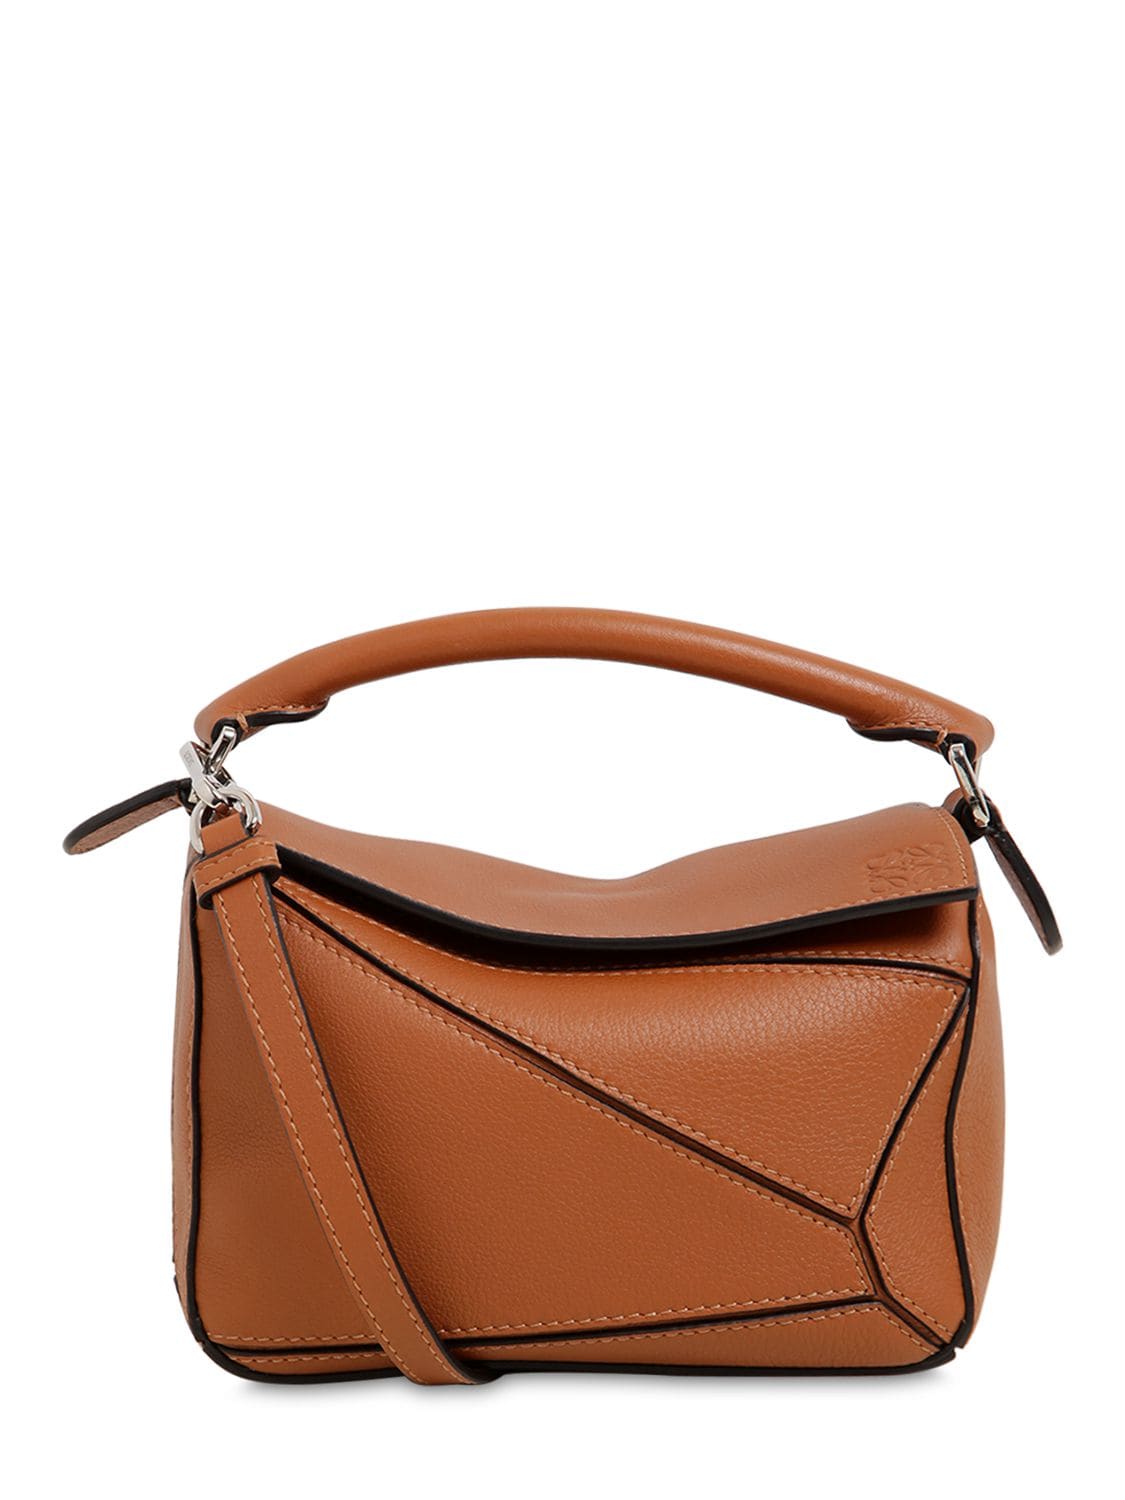 Loewe Mini Puzzle Leather Bag In Tan